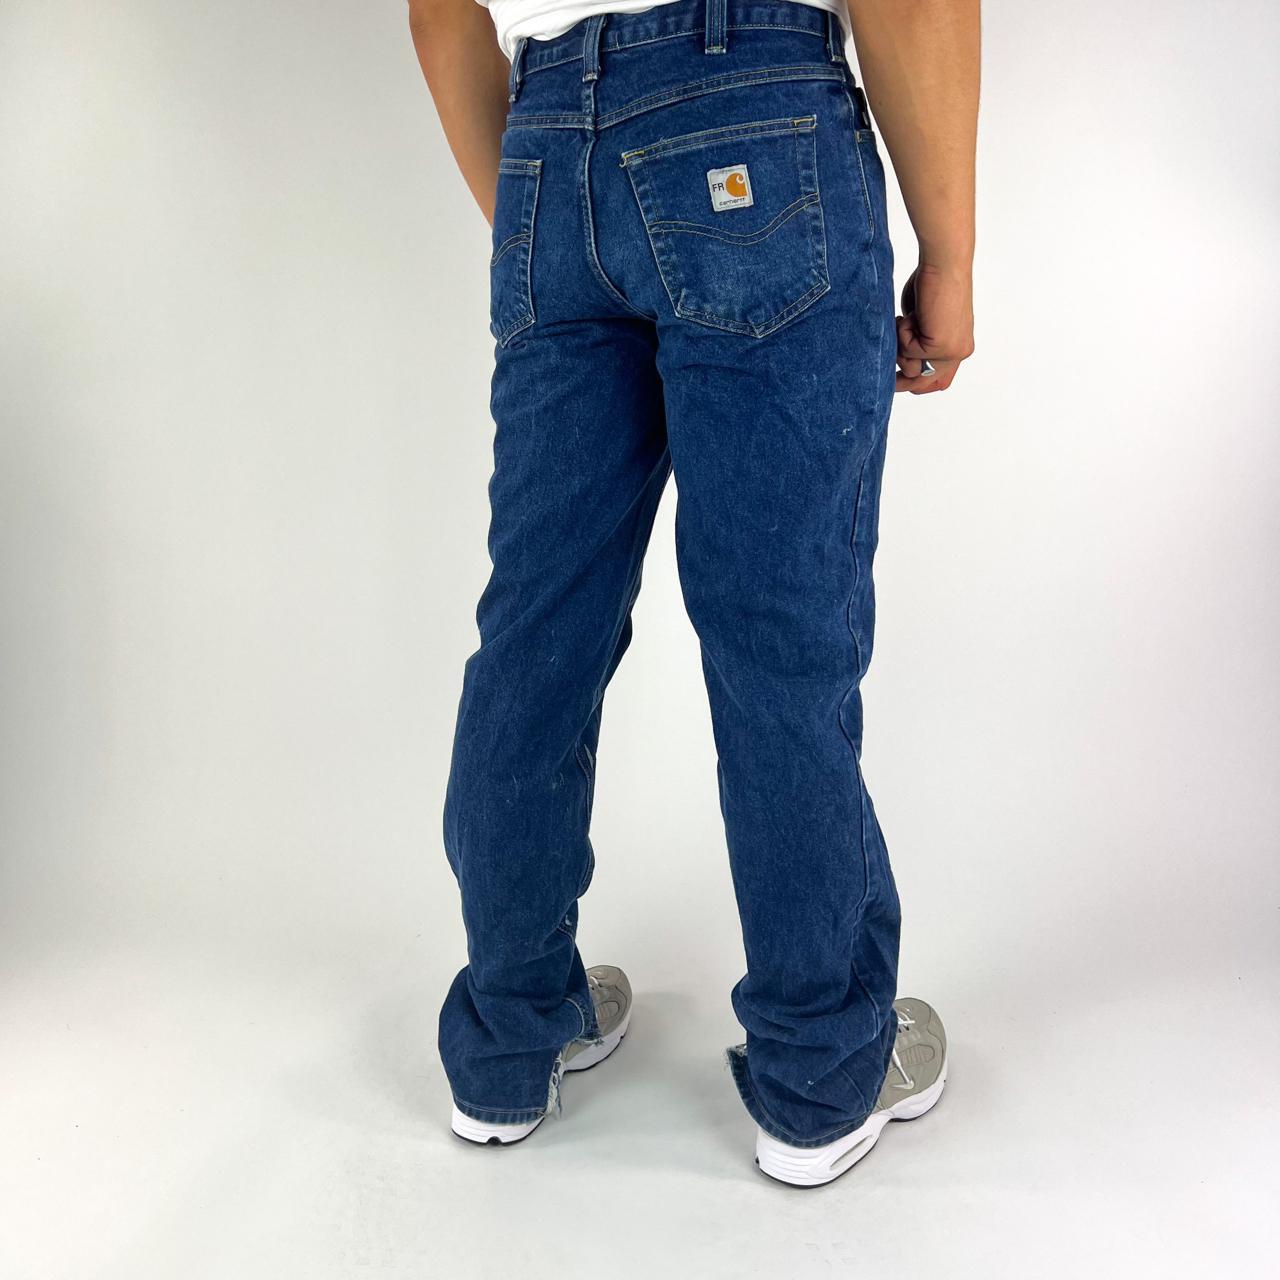 Vintage Blue Carhartt Carpenter Trousers Pants Jeans... - Depop